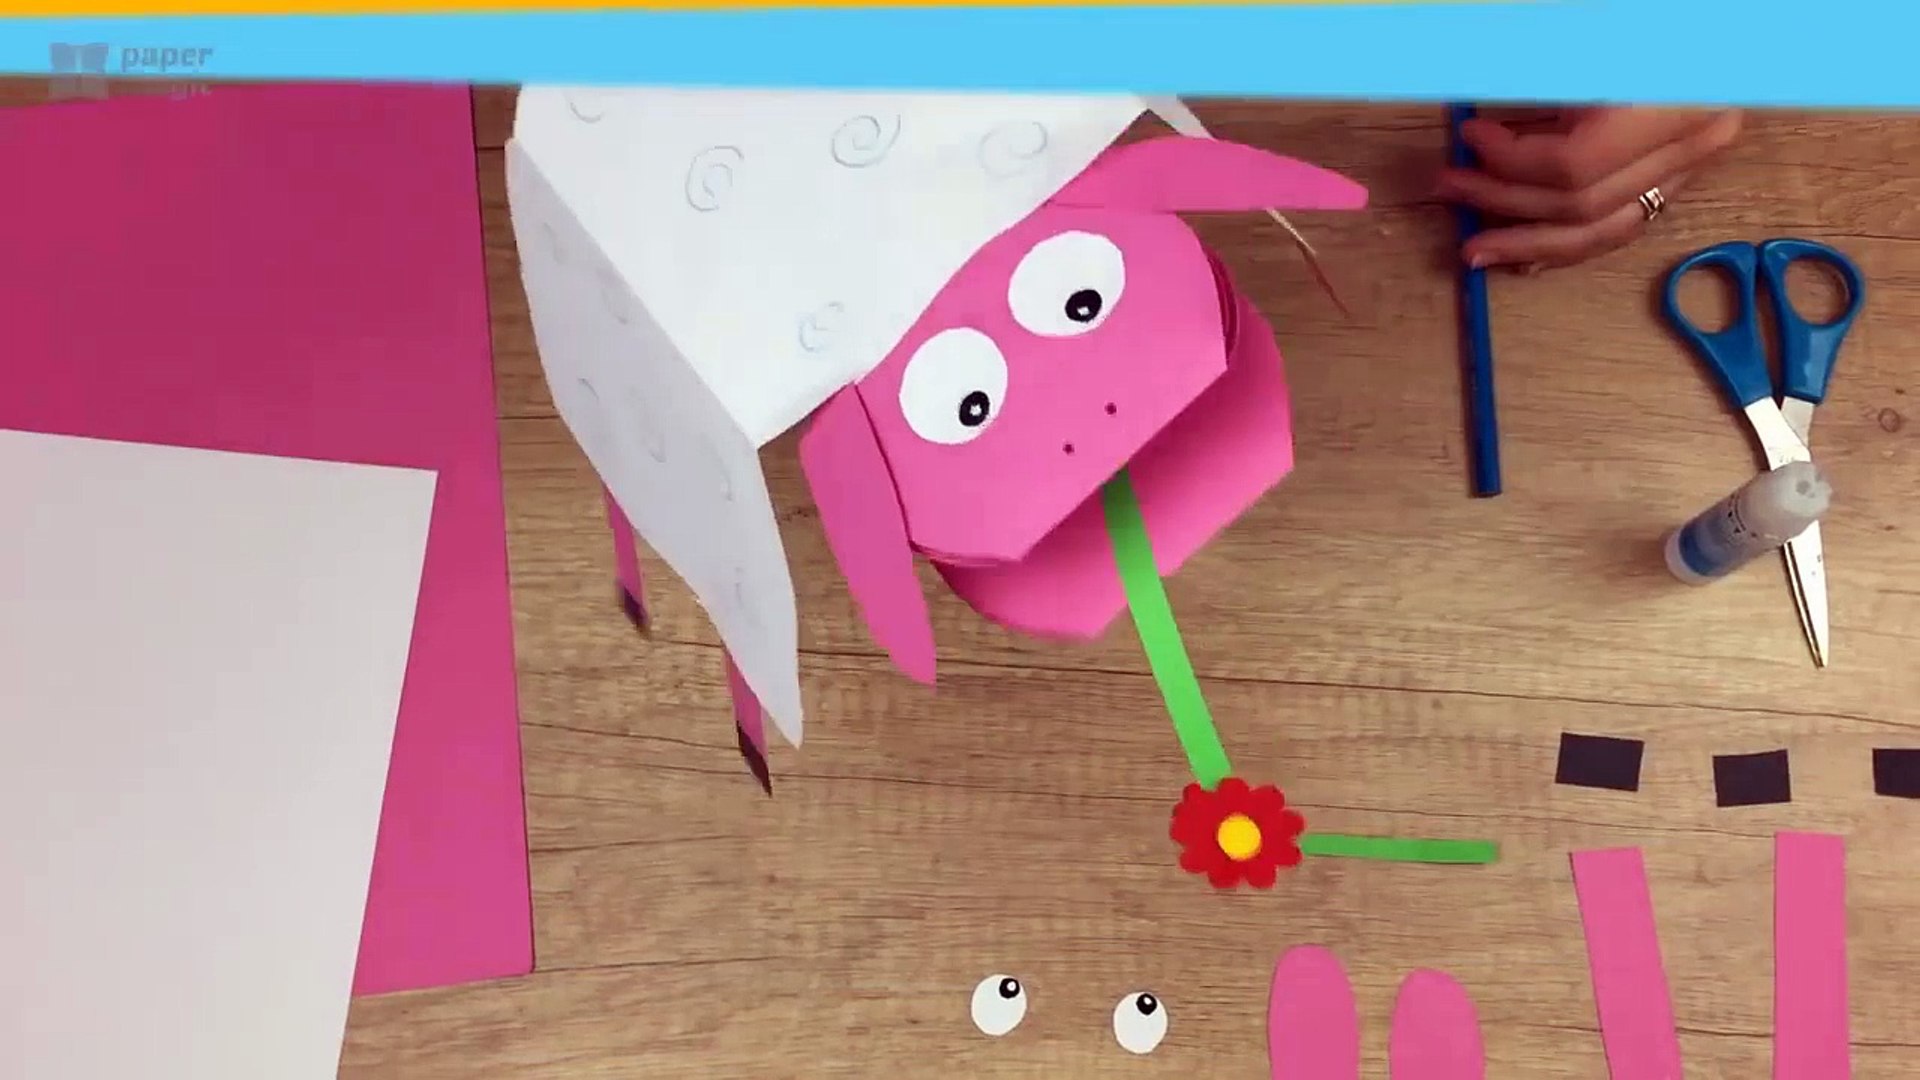 لعبة رائعة و مسلية بالورق الملون للاطفال - فيديو Dailymotion